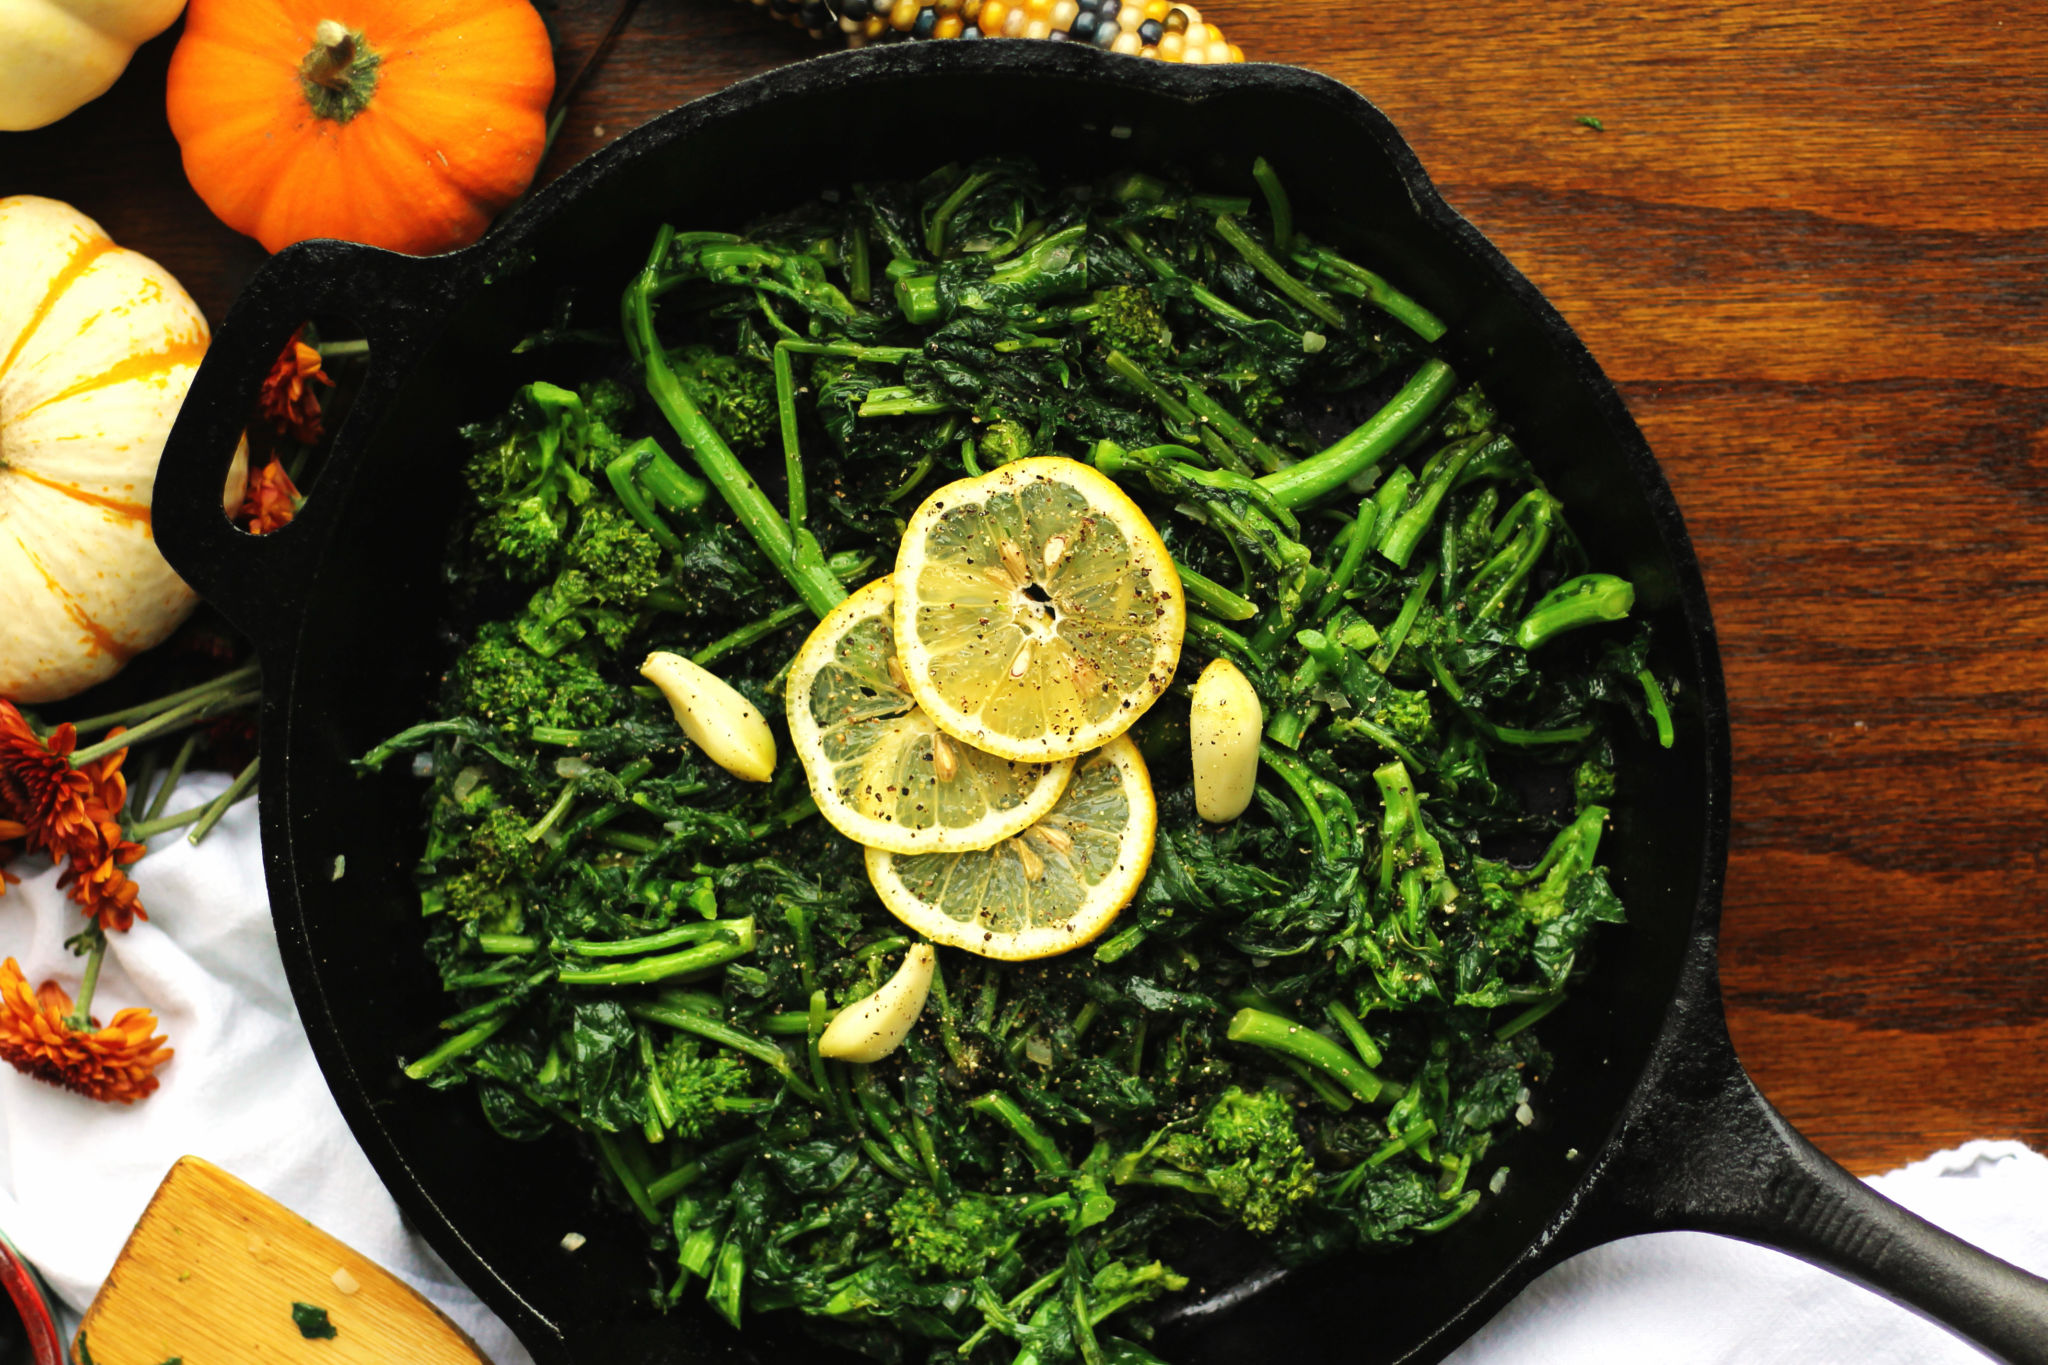 Garlicky Sautéed Broccoli Rabe and Kale